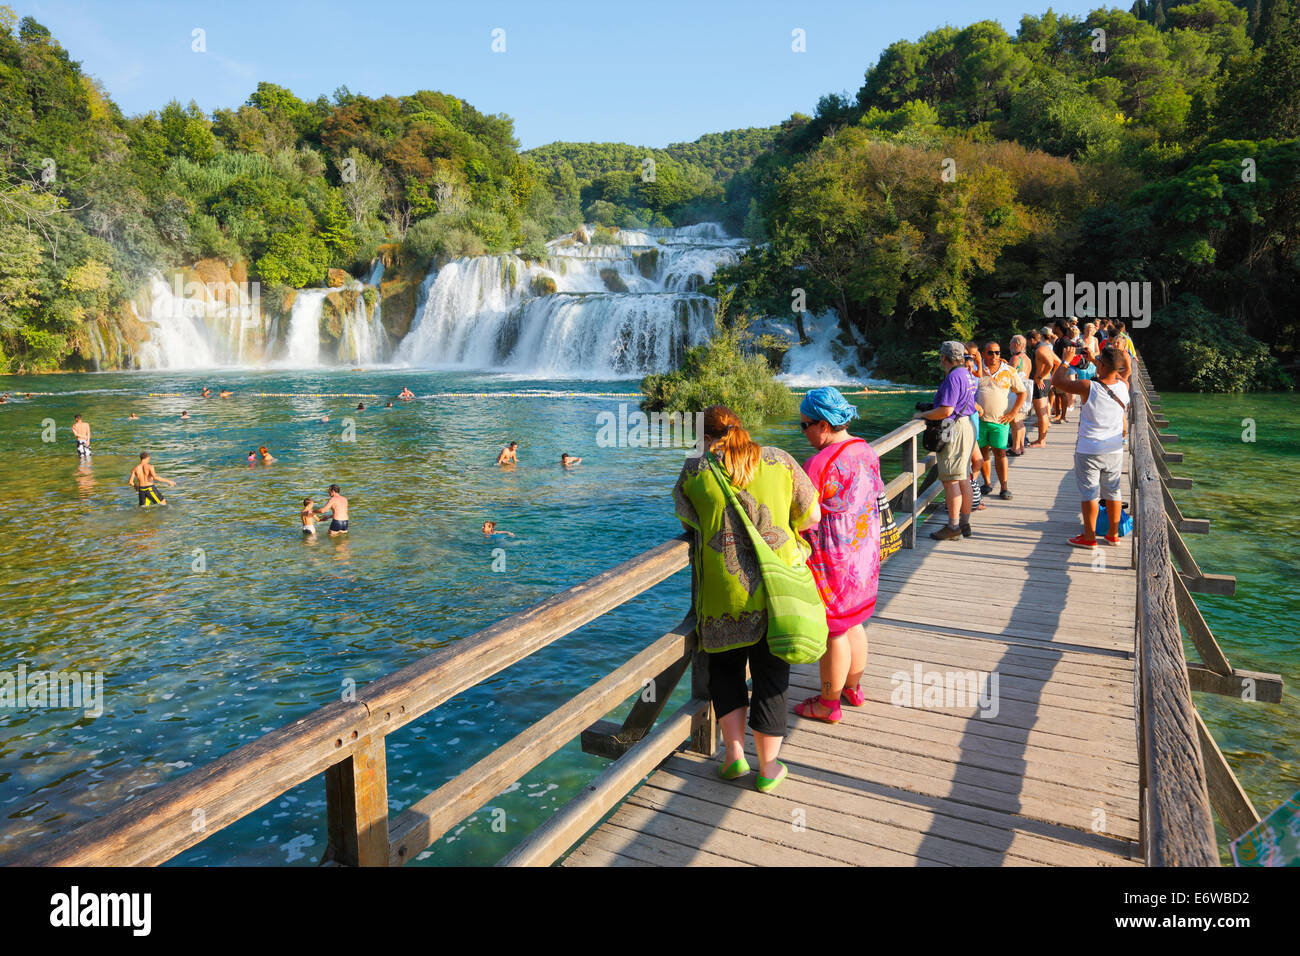 Nationalpark Krka, Kroatien. Touristen auf der Brücke Stockfotografie -  Alamy